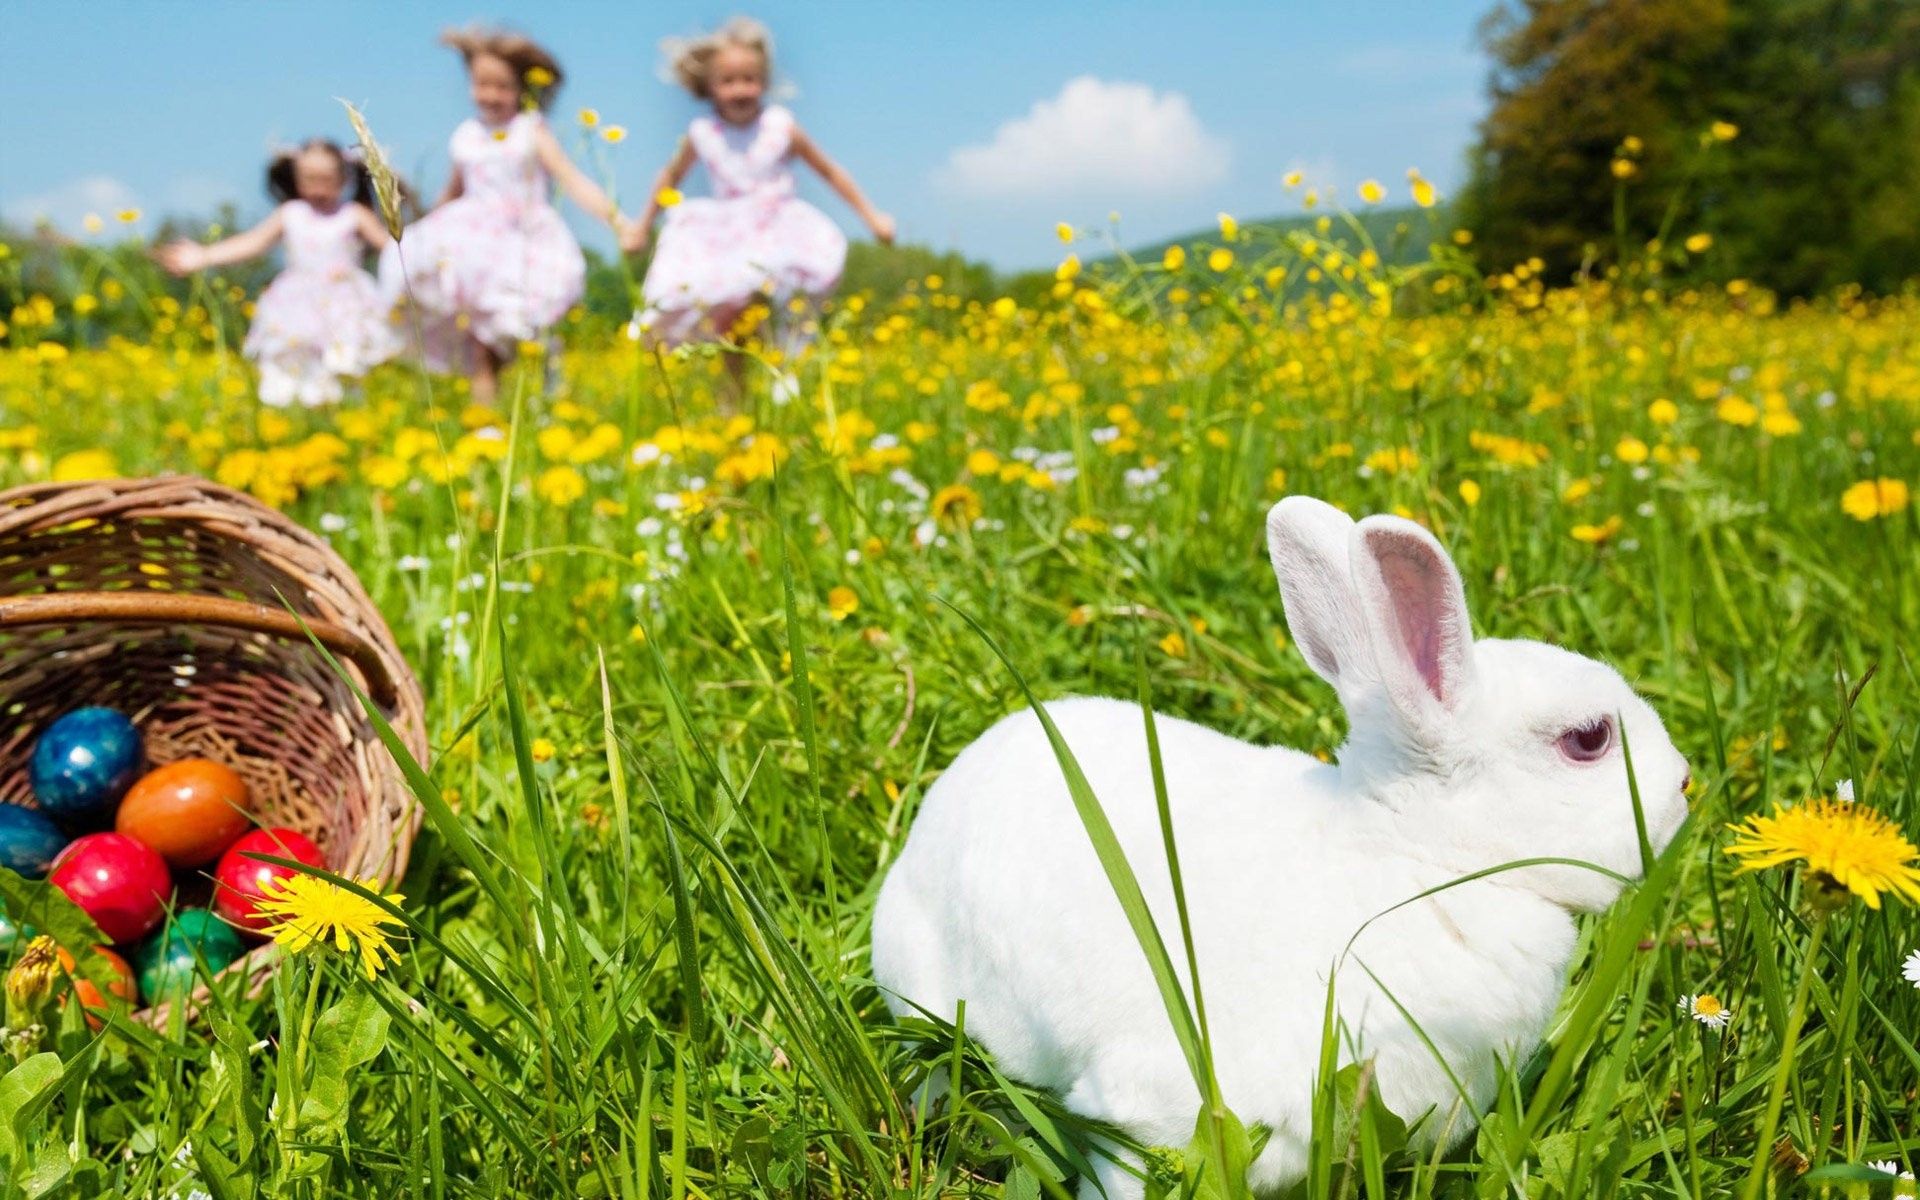 White pascua conejo fondos de pantalla | Conejo de pascua blanco fotos gratis